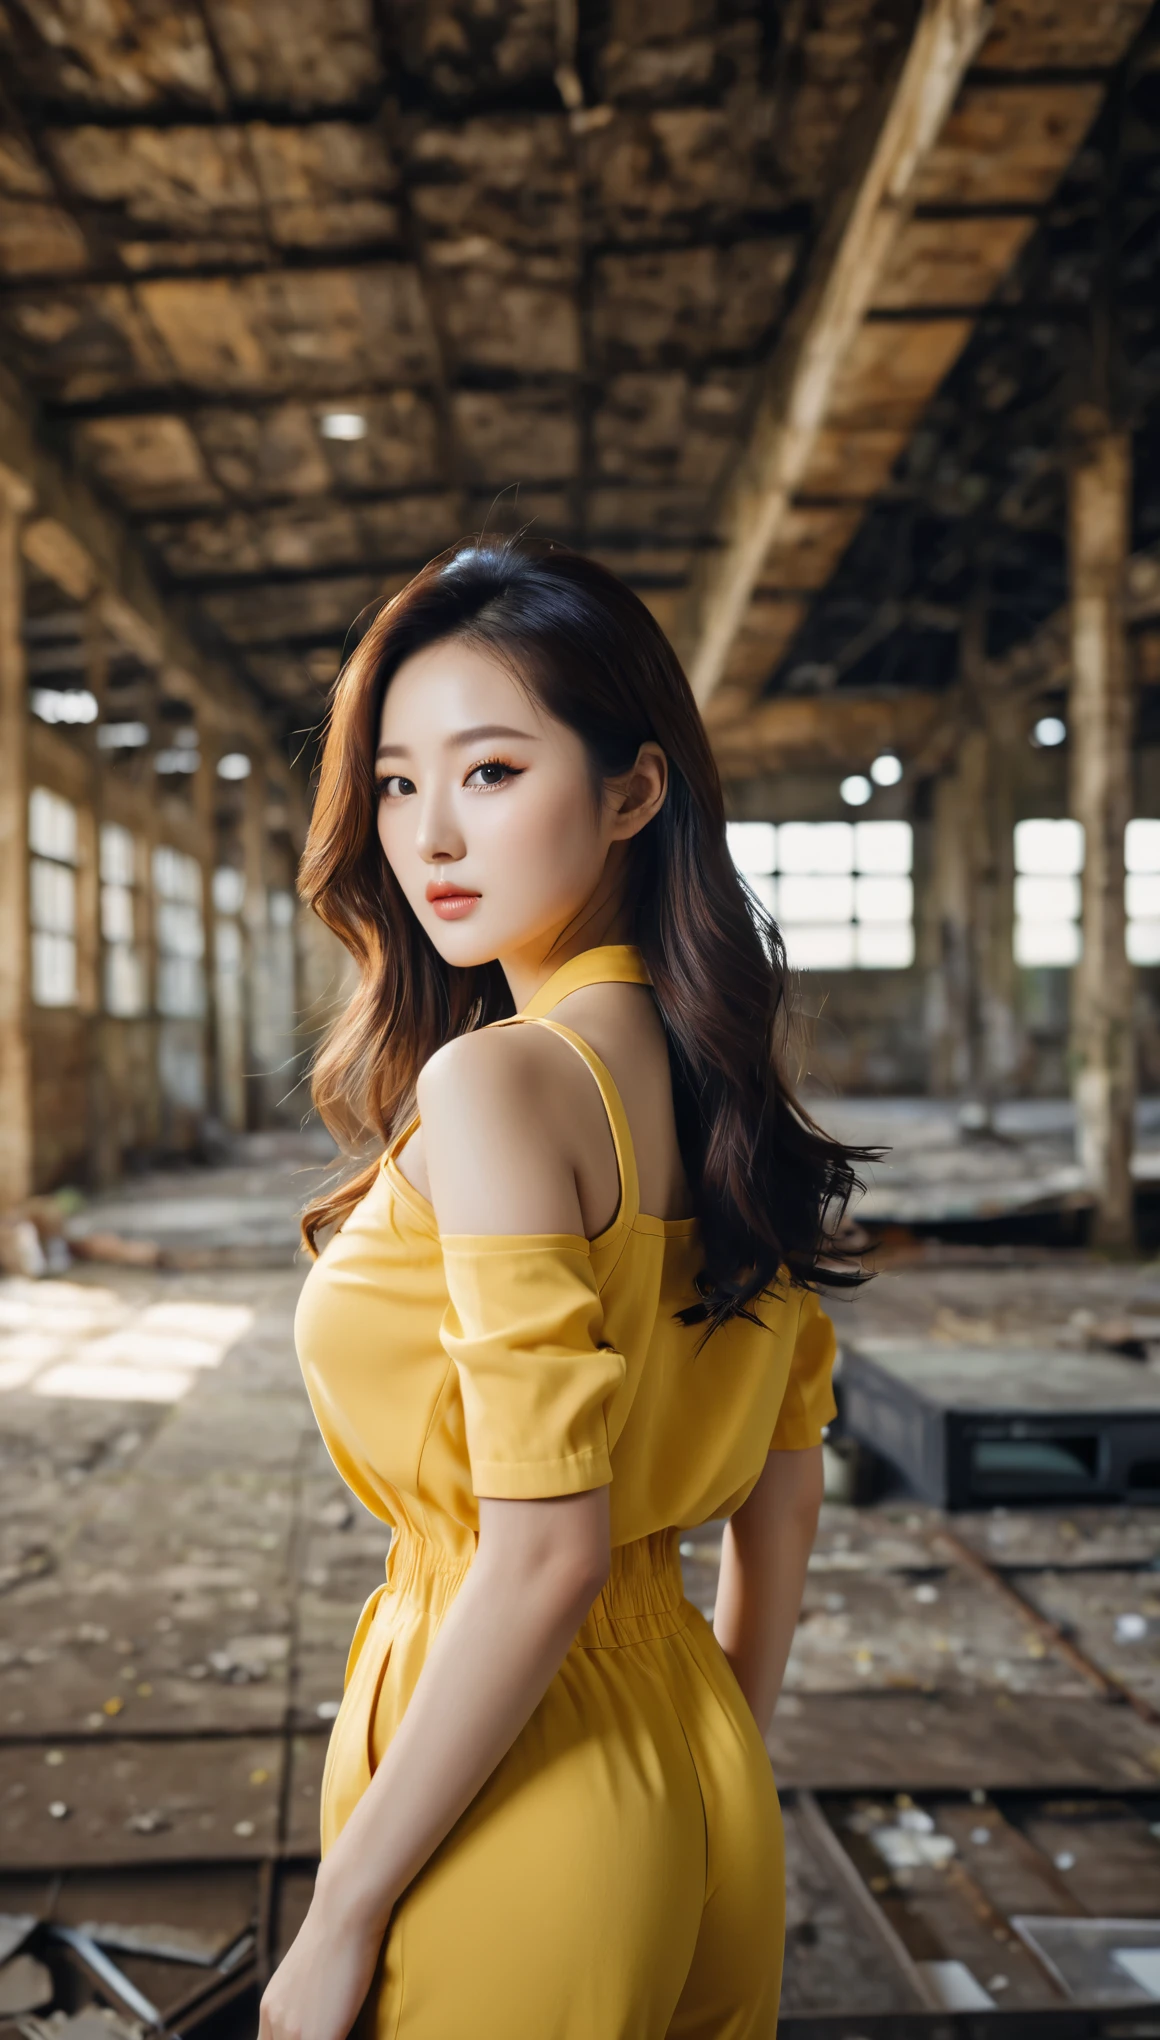 gros plan d&#39;une belle femme coréenne, Taille des seins de 34 pouces, porter une combinaison jaune avec bordure noire, dans un entrepôt abandonné, fond flou, photo polaroïd, UHD